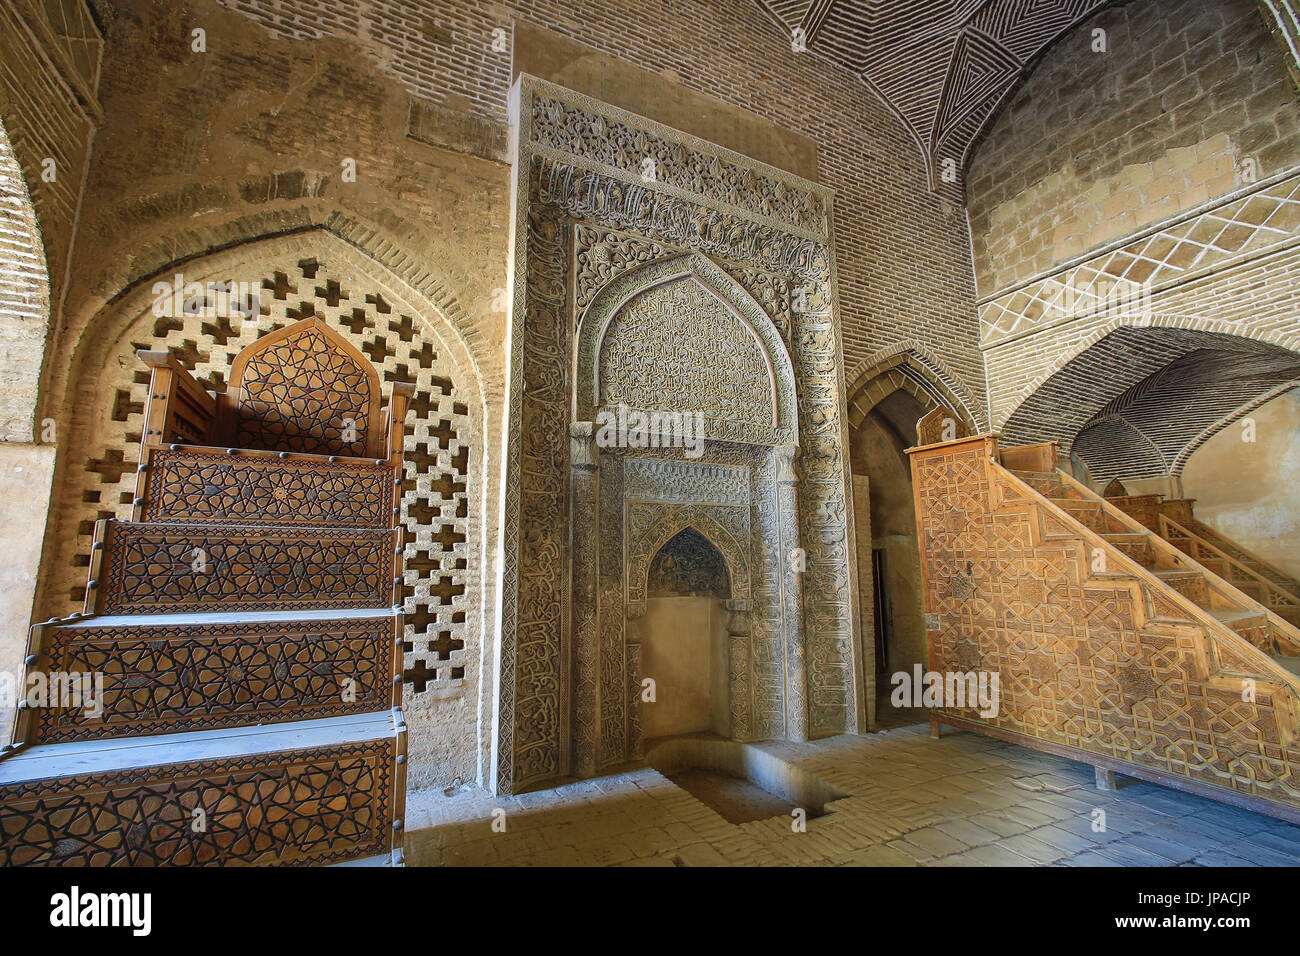 Iran, Esfahan Città, Masjed-e Jame (Moschea del Venerdì) Patrimonio Mondiale UNESCO West Iwan, stanza del sultano Uljeitu Foto Stock